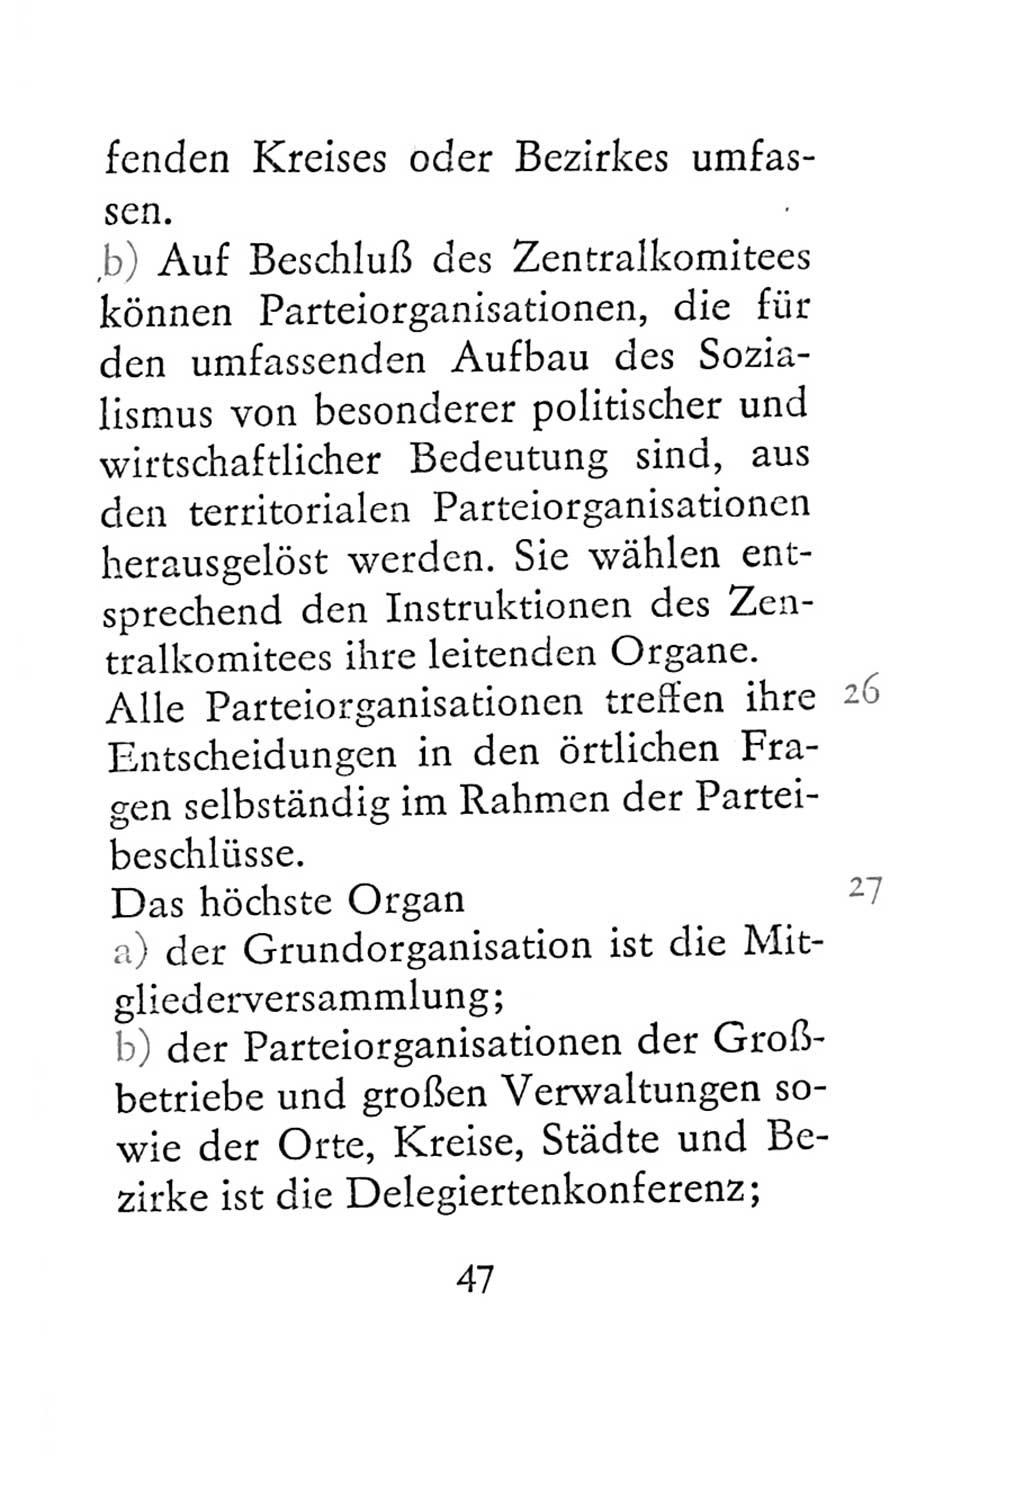 Statut der Sozialistischen Einheitspartei Deutschlands (SED) 1967, Seite 47 (St. SED DDR 1967, S. 47)